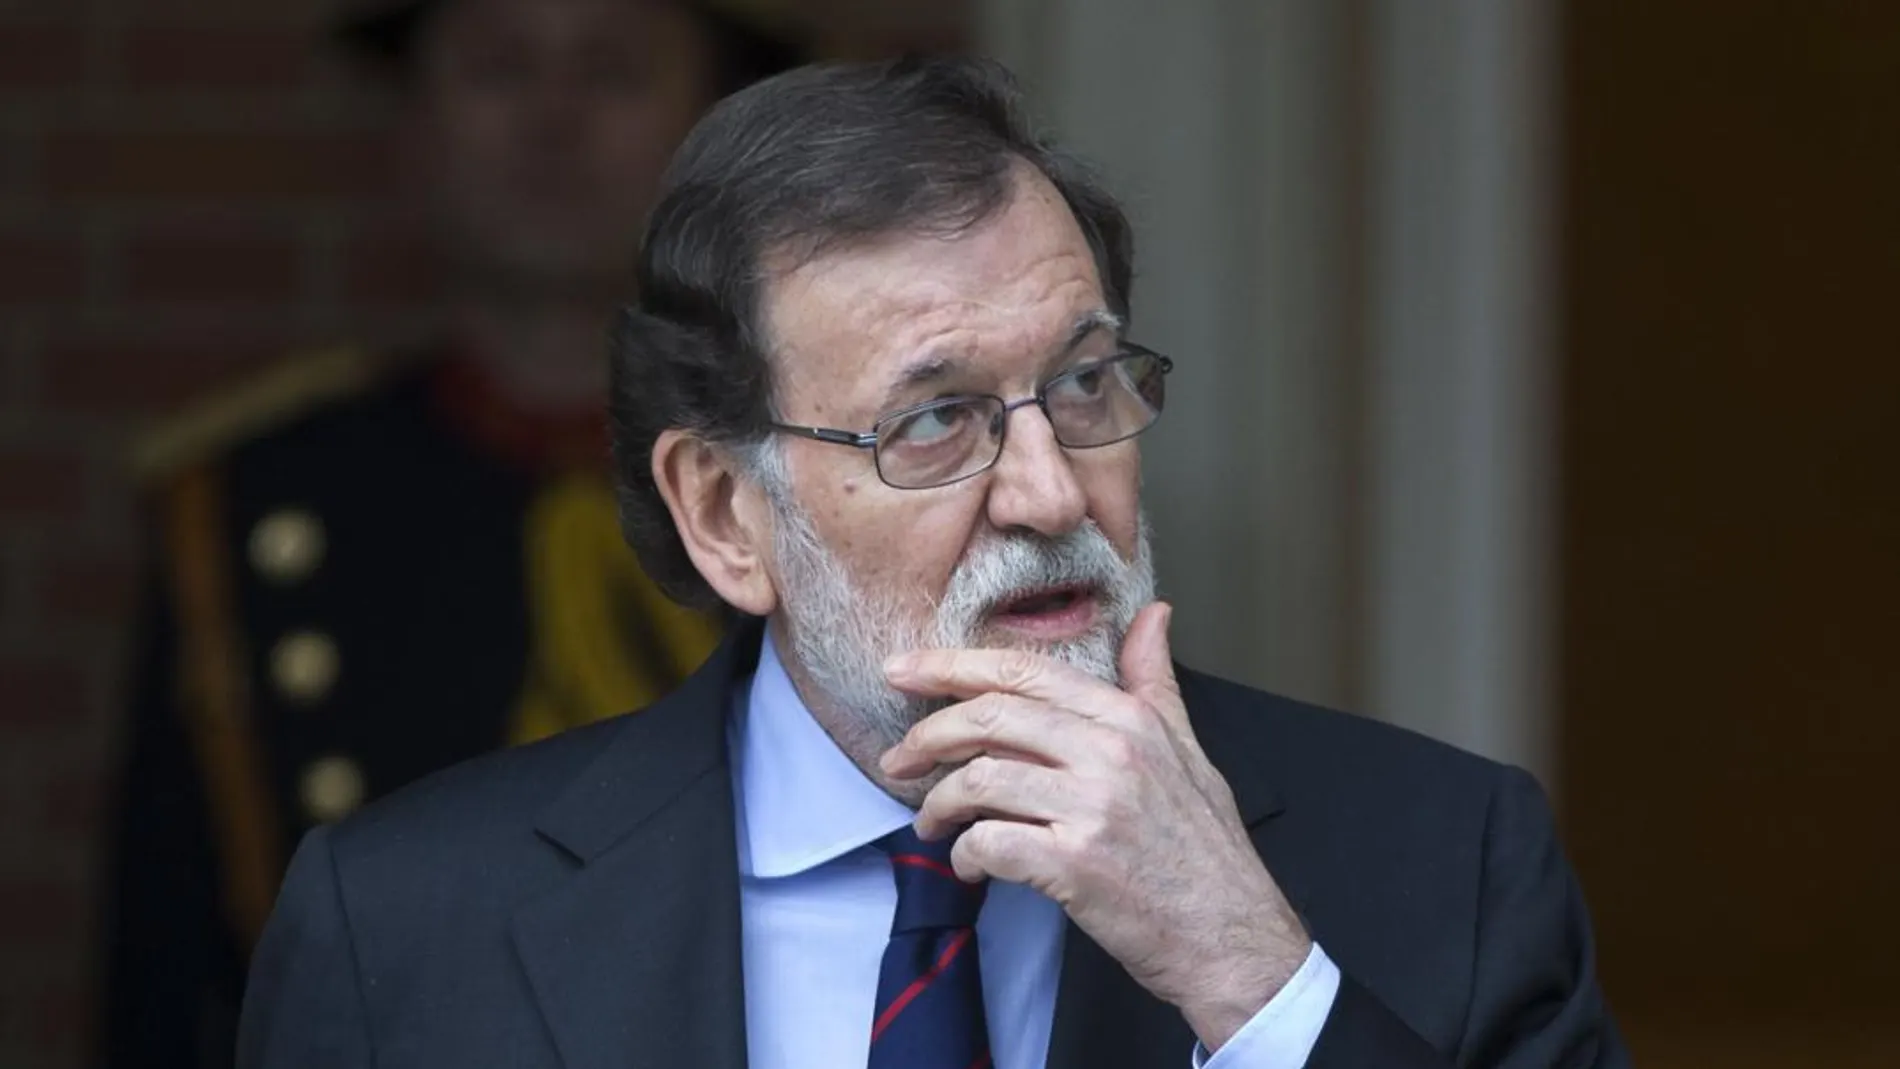 El jefe del Gobierno, Mariano Rajoy